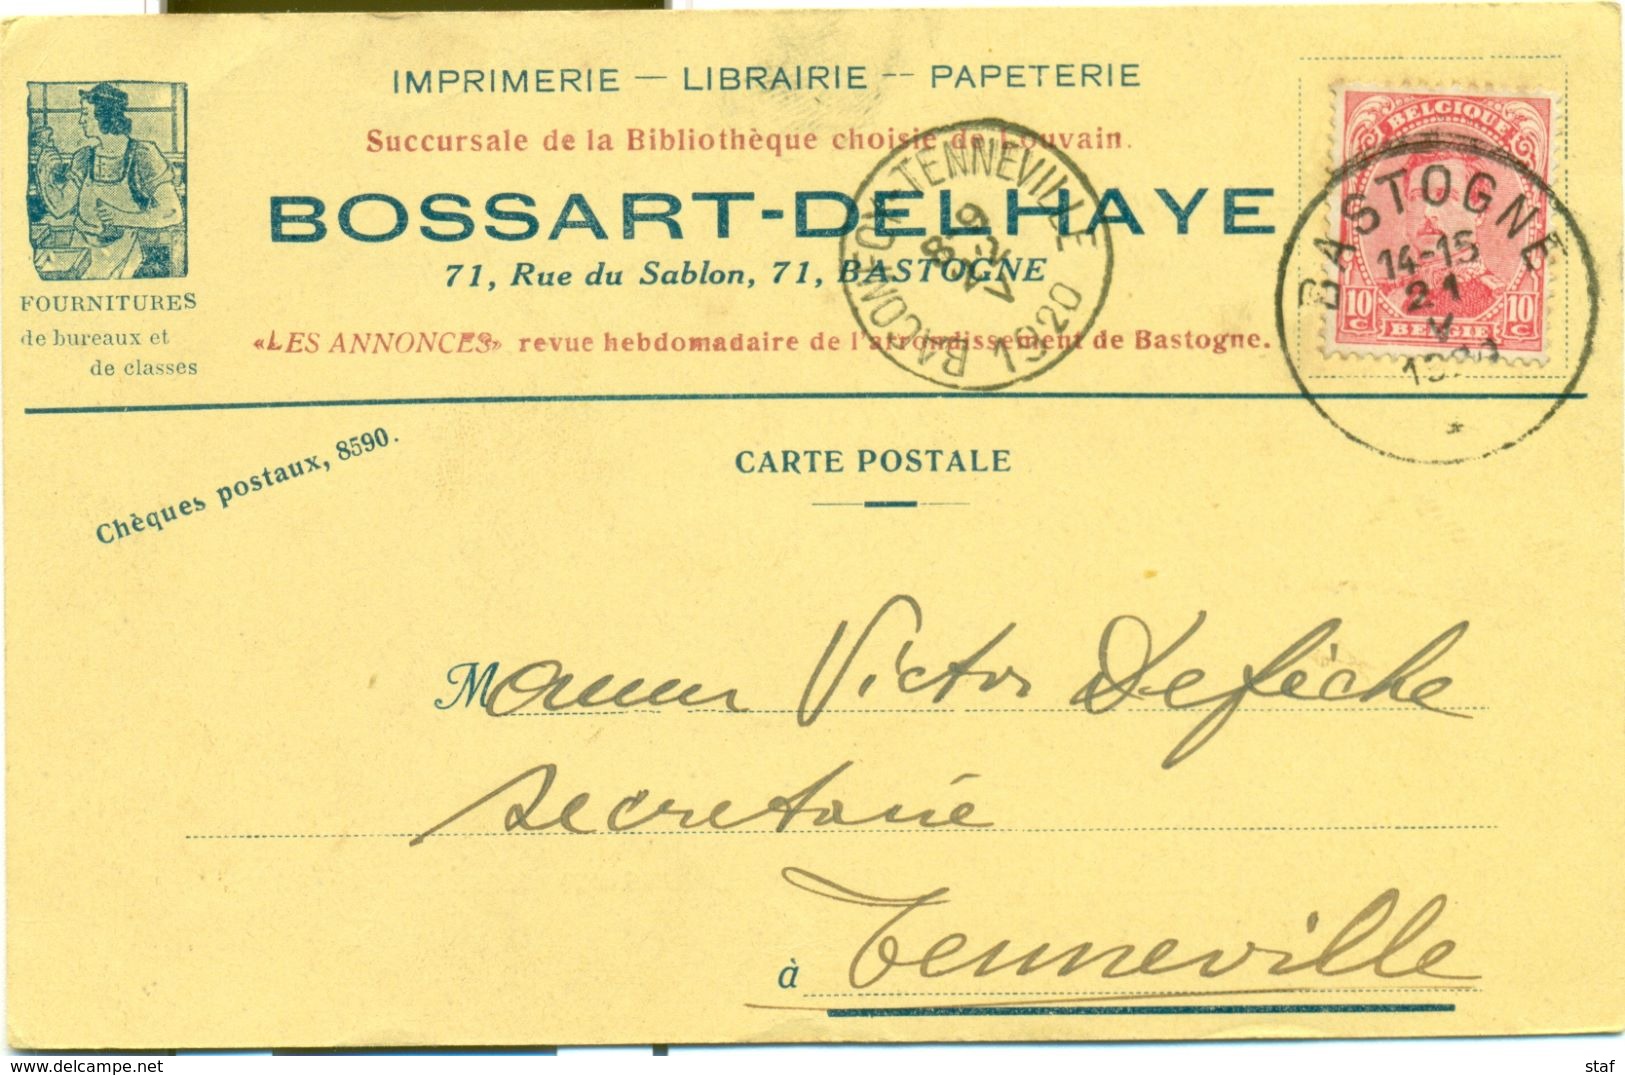 Imprimerie - Librairie - Papéterie Bossart - Delhaye à Bastogne : 1920 - Drukkerij & Papieren